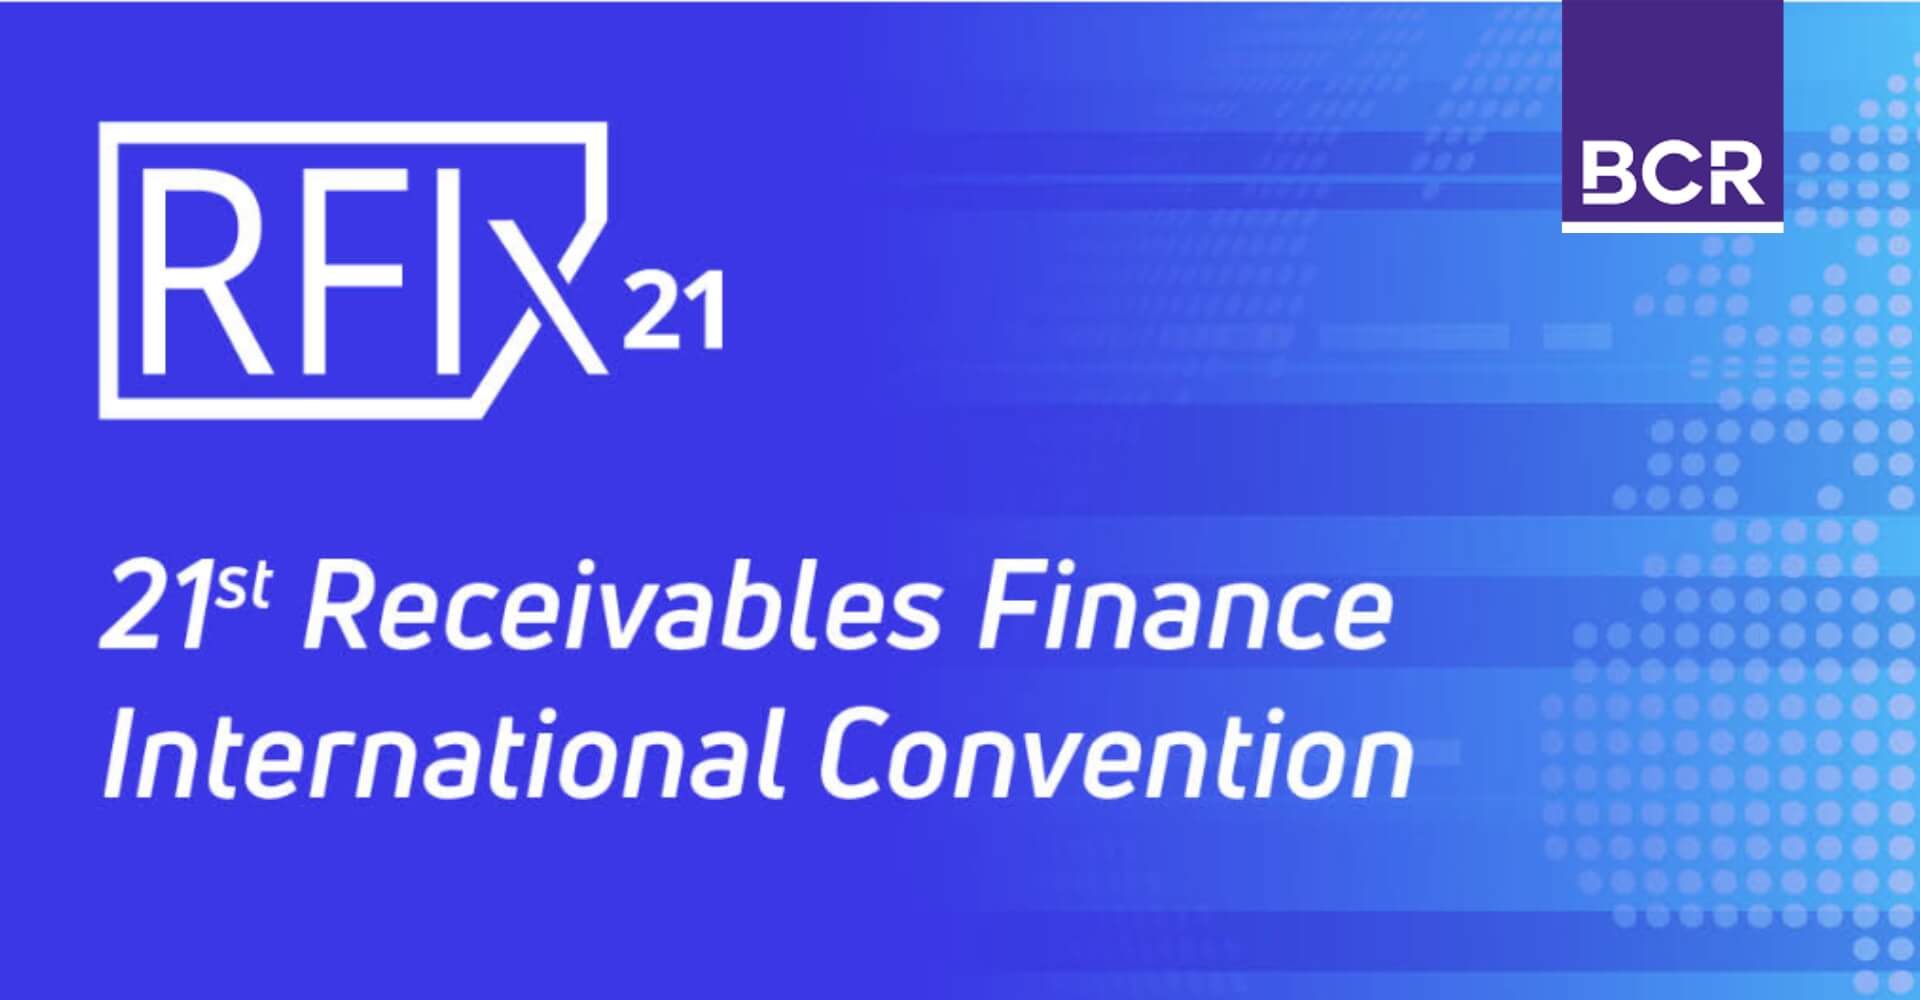 Codix at RFIX – CONVENTION INTERNATIONALE SUR LE FINANCEMENT DE CRÉANCES 2021